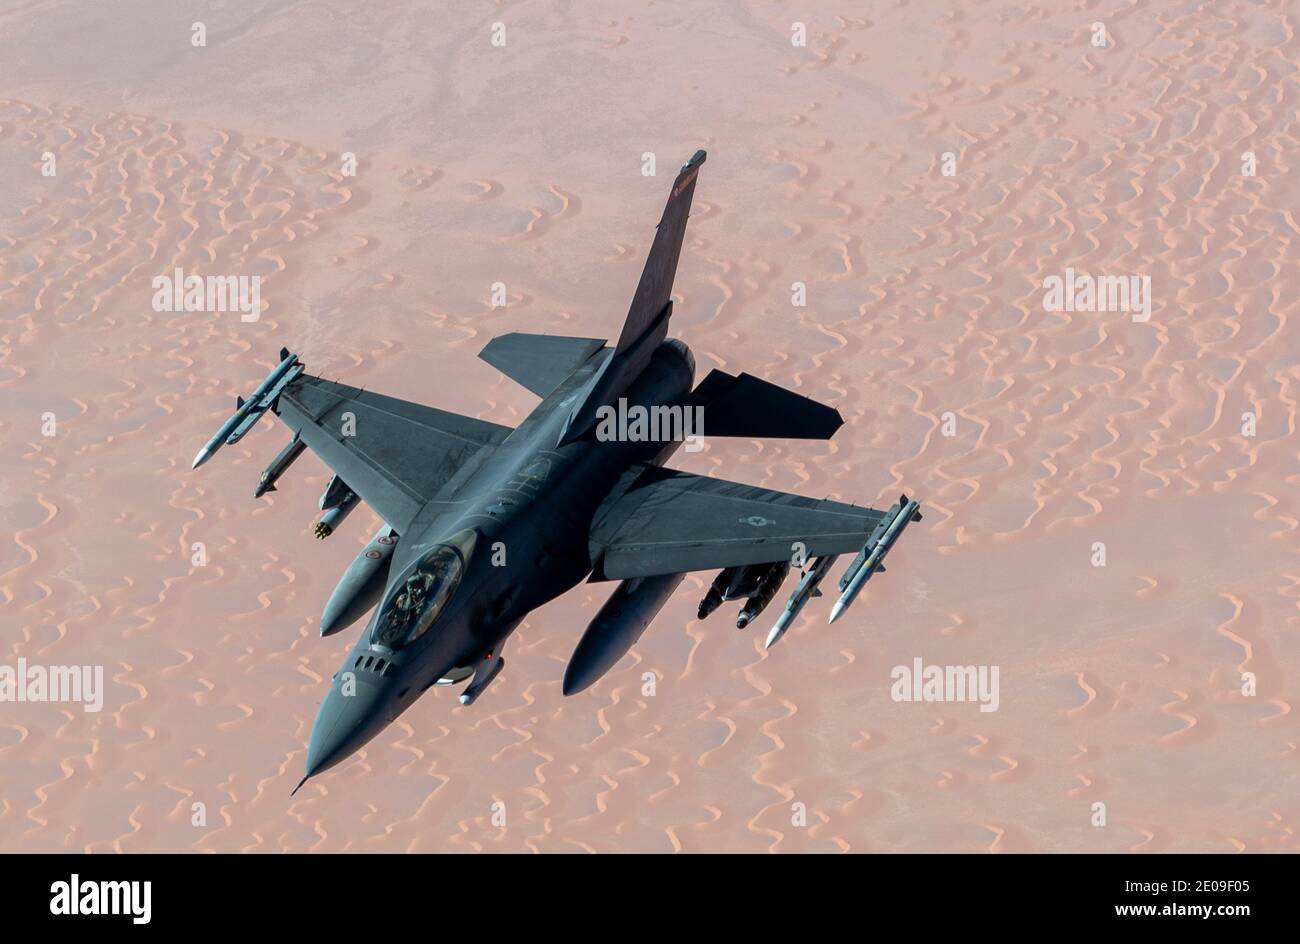 Persischer Golf, Vereinigte Staaten. Dezember 2020. Eine US-Luftwaffe EIN F-16 der US-Luftwaffe, der Falcon bekämpft, nähert sich einem KC-135 Stratotanker, um am 30. Dezember 2020 über dem Persischen Golf zu tanken. Der Kämpfer ist eine Eskorte für strategische B-52-Bomber von Stratofortress während einer Show der Force-Mission als Botschaft an den Iran. Quelle: Planetpix/Alamy Live News Stockfoto